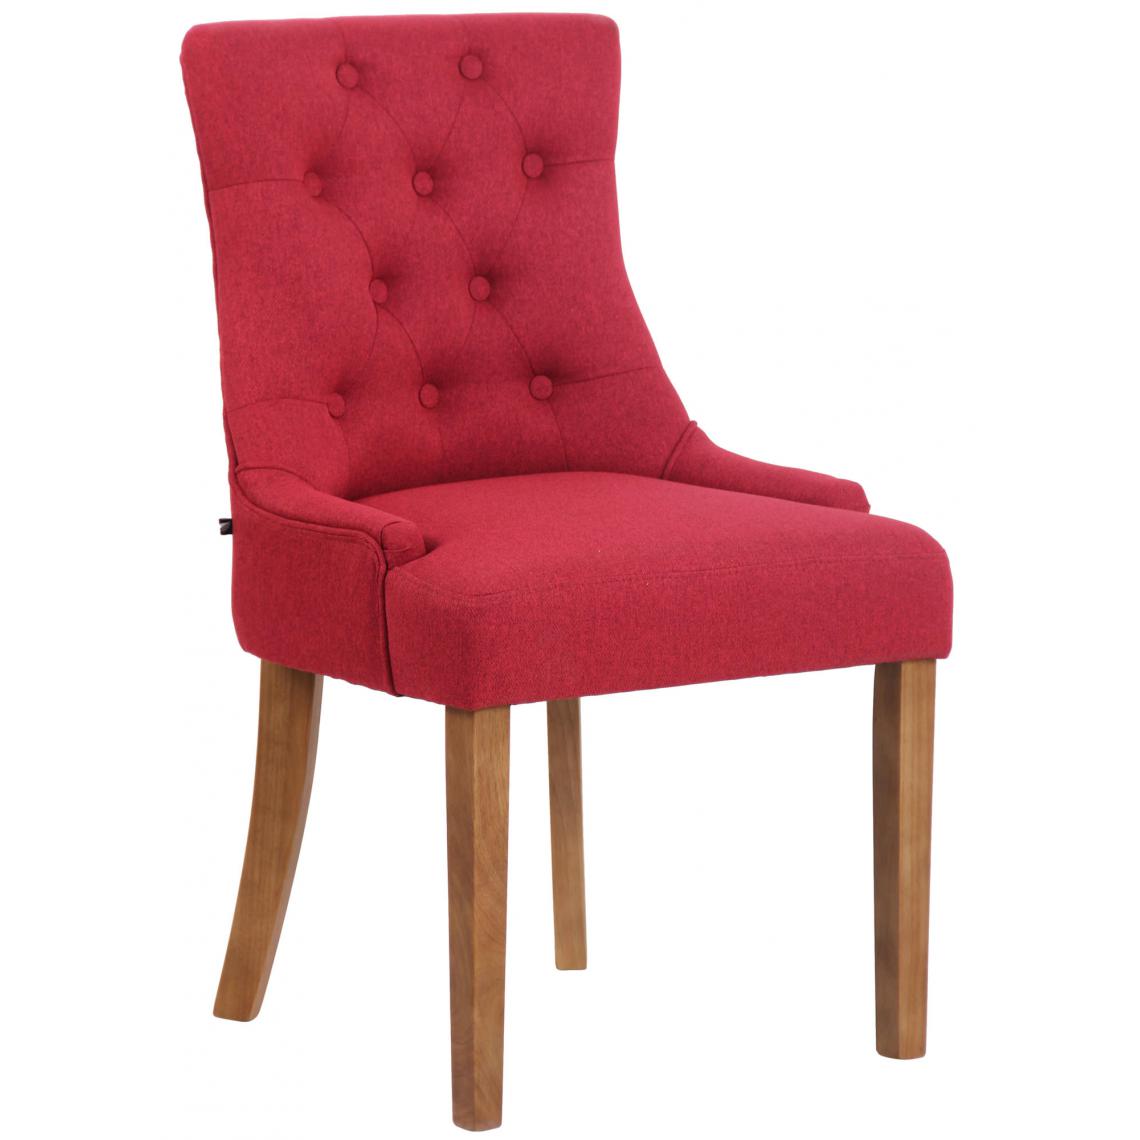 Icaverne - Chic Chaise de salle à manger tissu gamme Avarua antique-light couleur rouge - Chaises